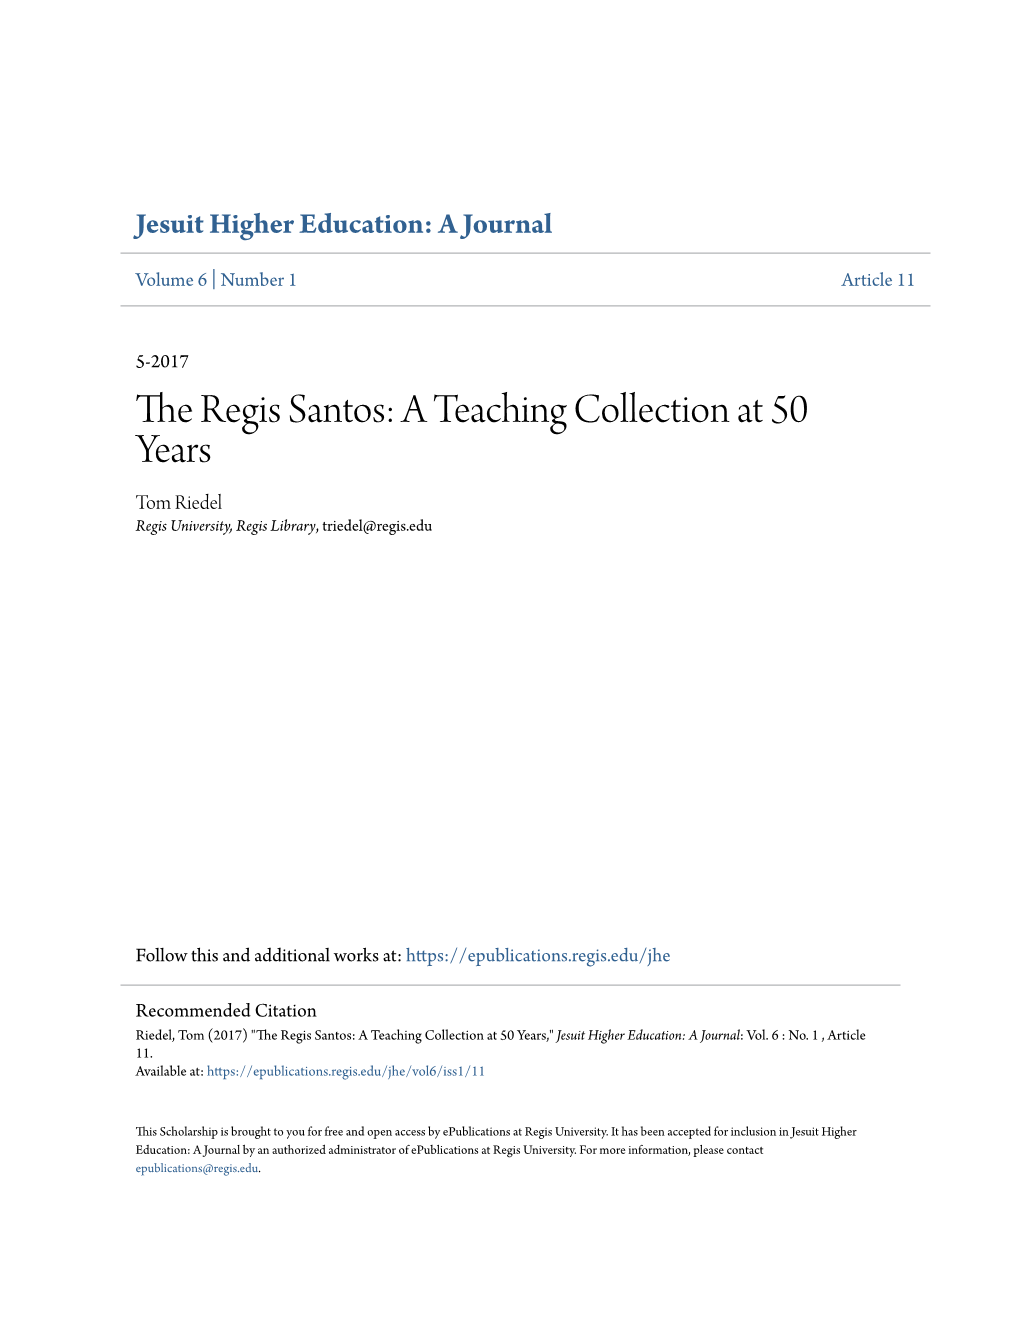 The Regis Santos: a Teaching Collection at 50 Years Tom Riedel Regis University, Regis Library, Triedel@Regis.Edu